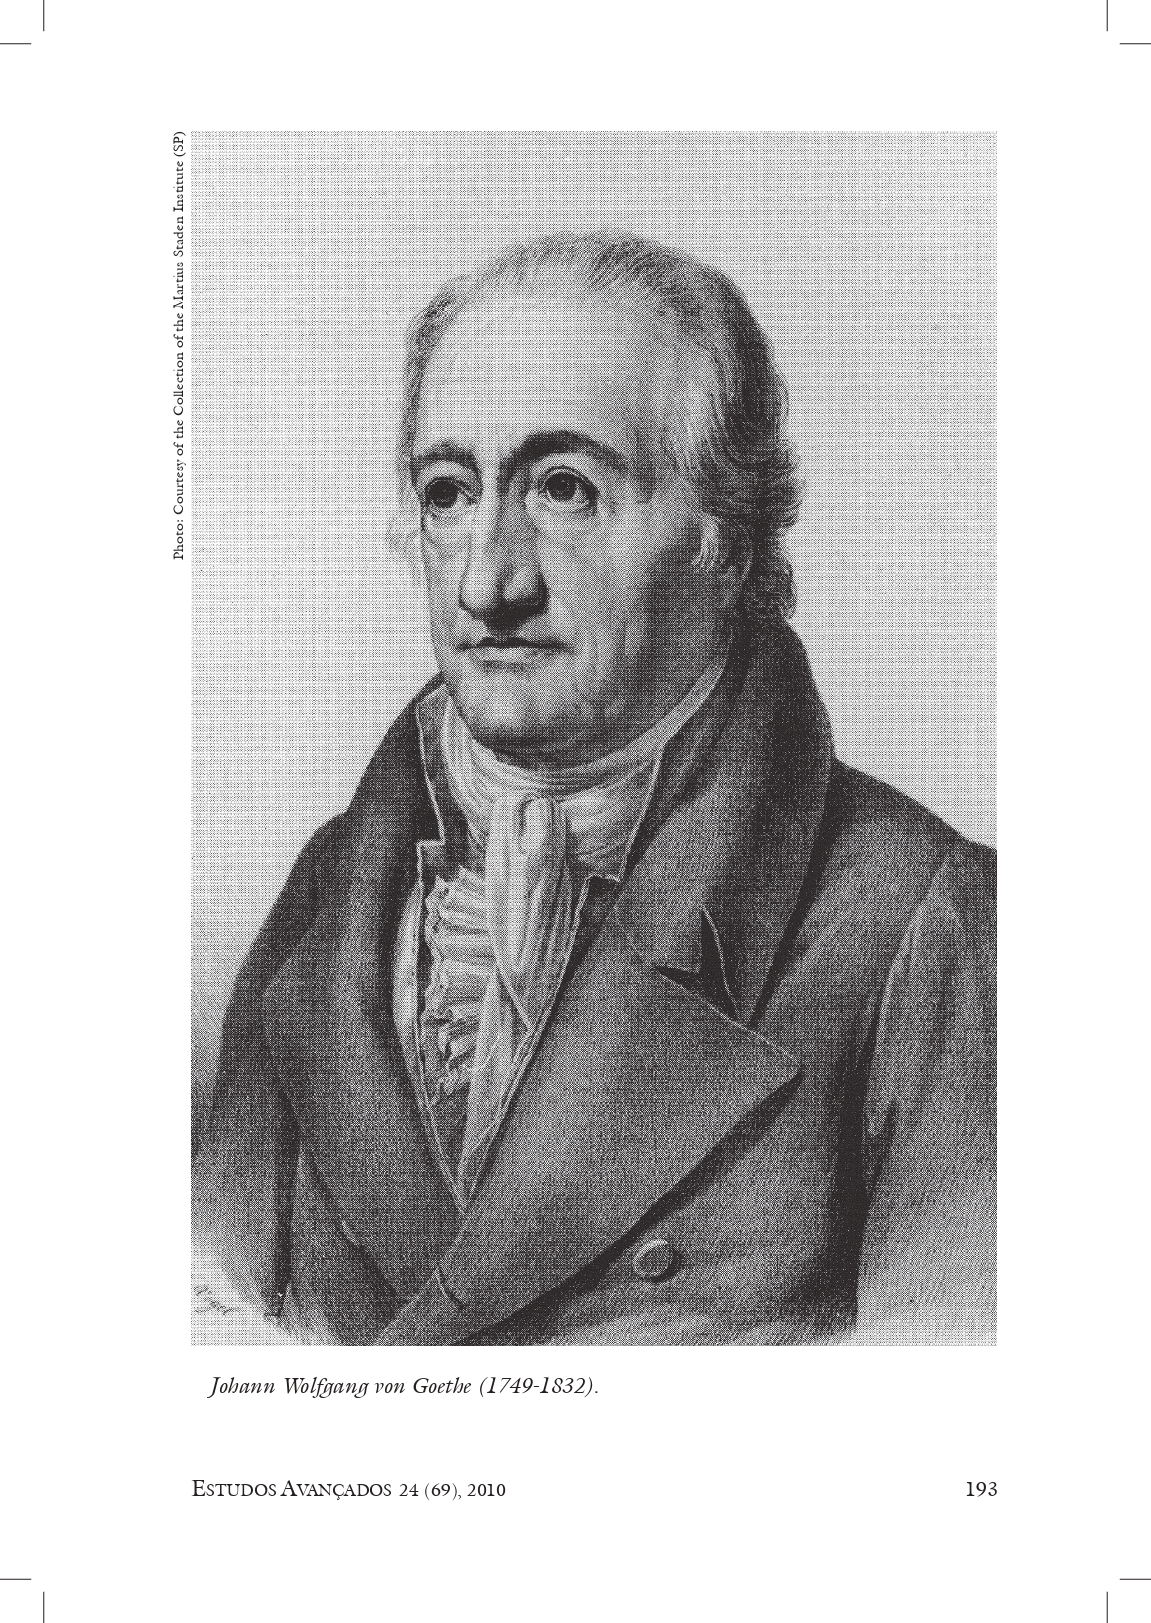 Sobre la visión y los colores : seguido de la correspondencia con Johann Wolfgang Goethe.